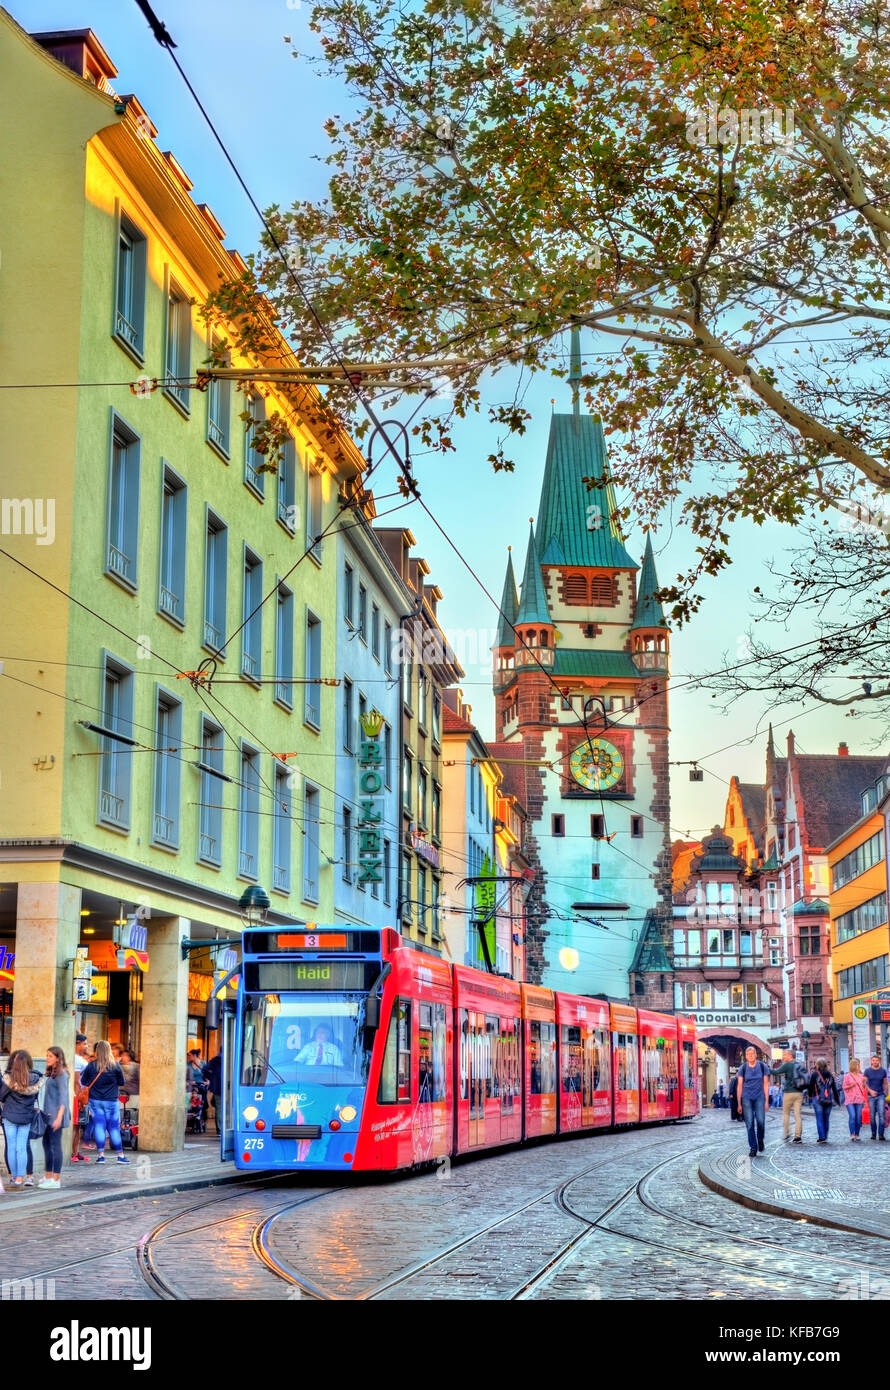 Freiburg im Breisgau, Germania - 14 ottobre 2017: siemens combino tram nella città vecchia. Il tram di Friburgo rete consiste di 5 linee con 73 si arresta. Foto Stock